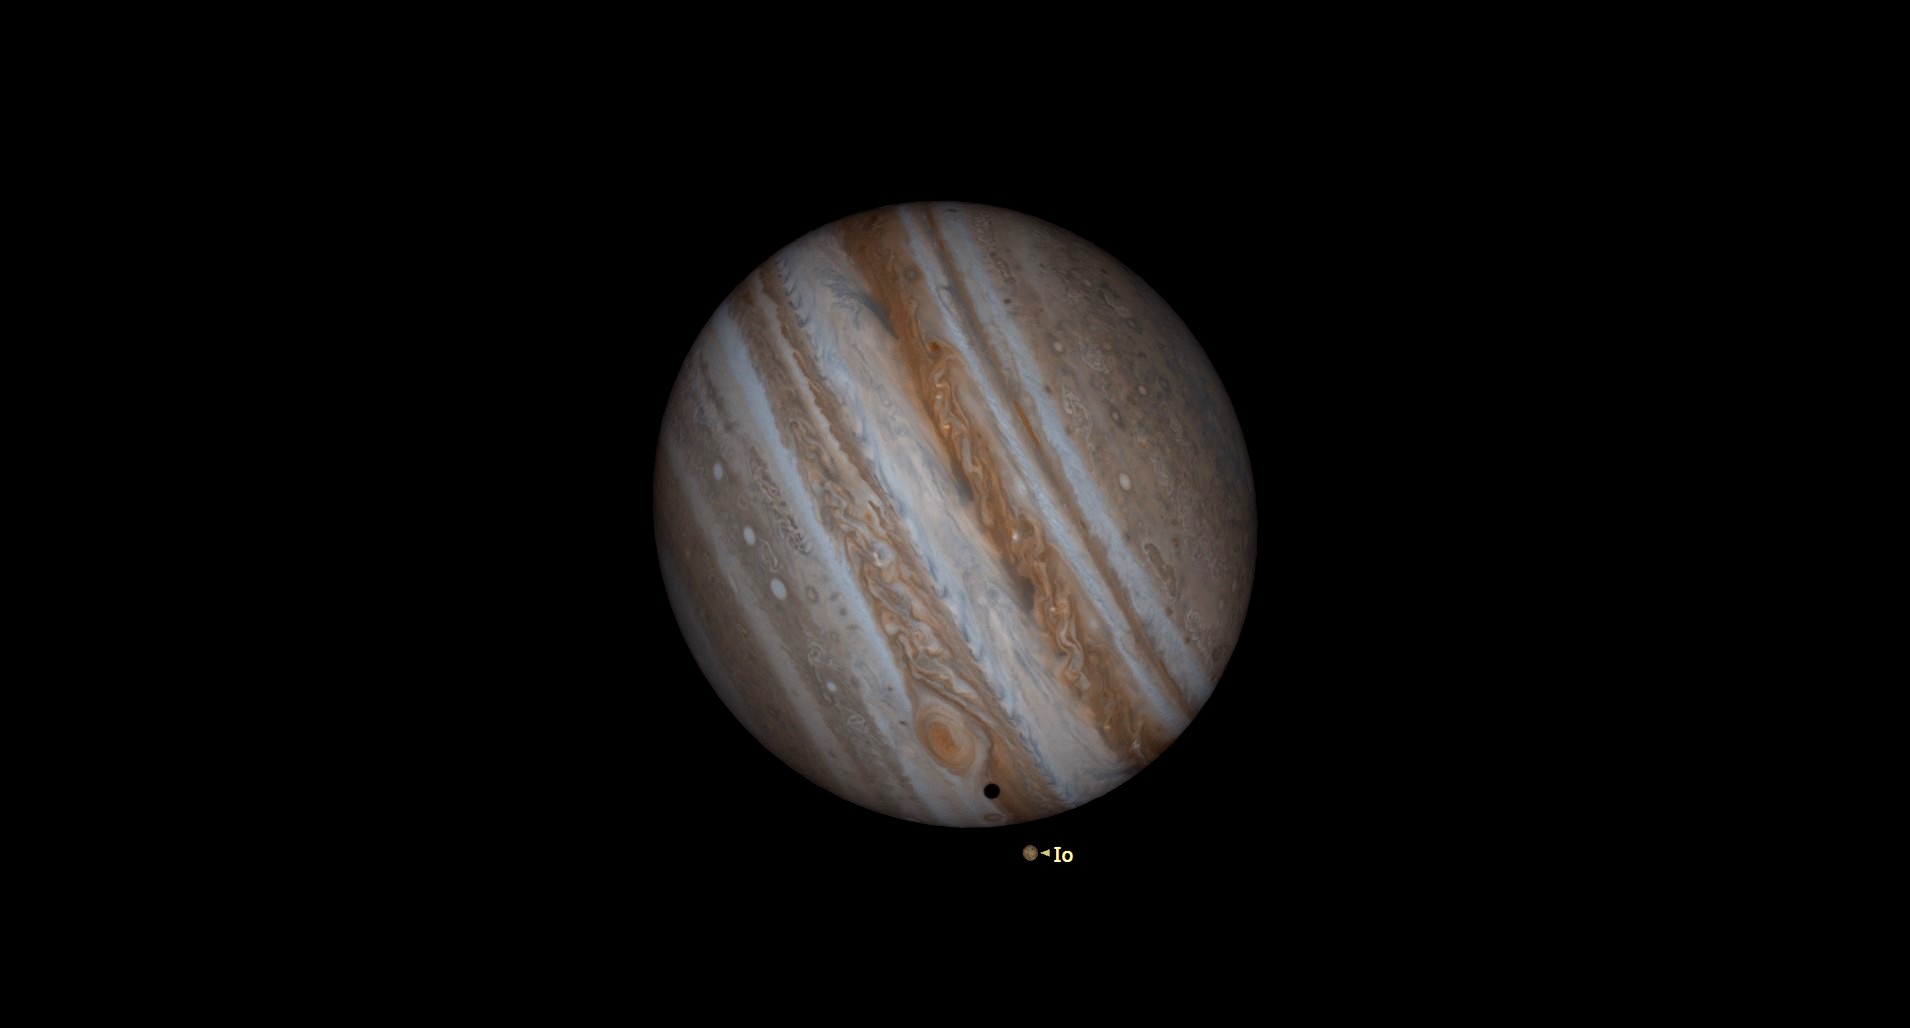 Un Jupiter mare, gazos, se înclină spre dreapta, straturile sale multicolore de maro, bronz și portocaliu atârnând în spațiul negru.  aproape de fundul planetei, furtuna cu ochi roșii a lui Jupiter se învârte deasupra umbrei negre aruncate pe suprafața planetei de pe luna Io, odihnindu-se chiar dedesubt și etichetată.